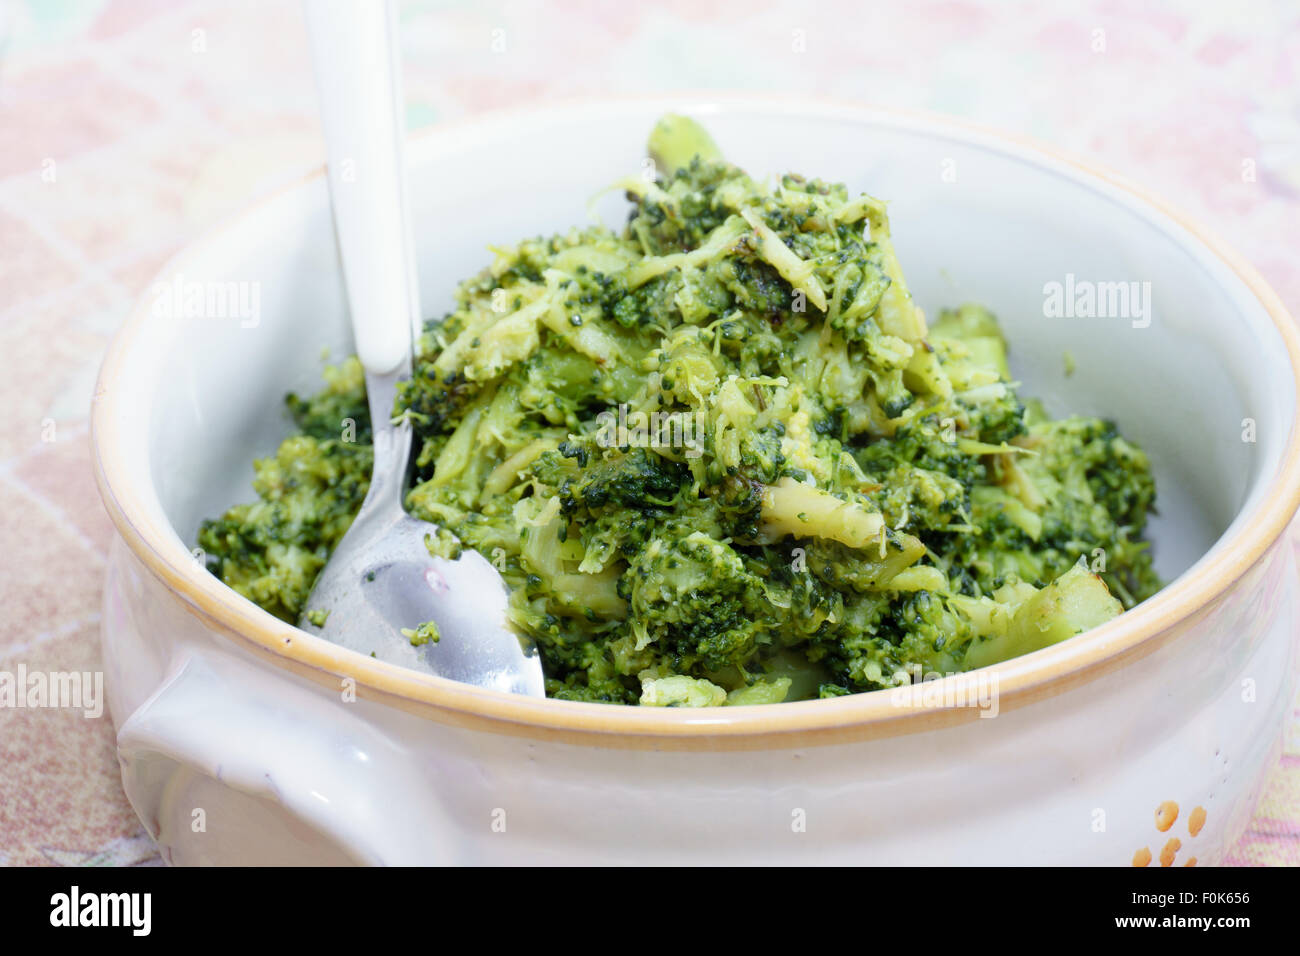 Le brocoli, la cuisine, légumes, végétalien, régime alimentaire, cime di rapa, la cuisine italienne Banque D'Images